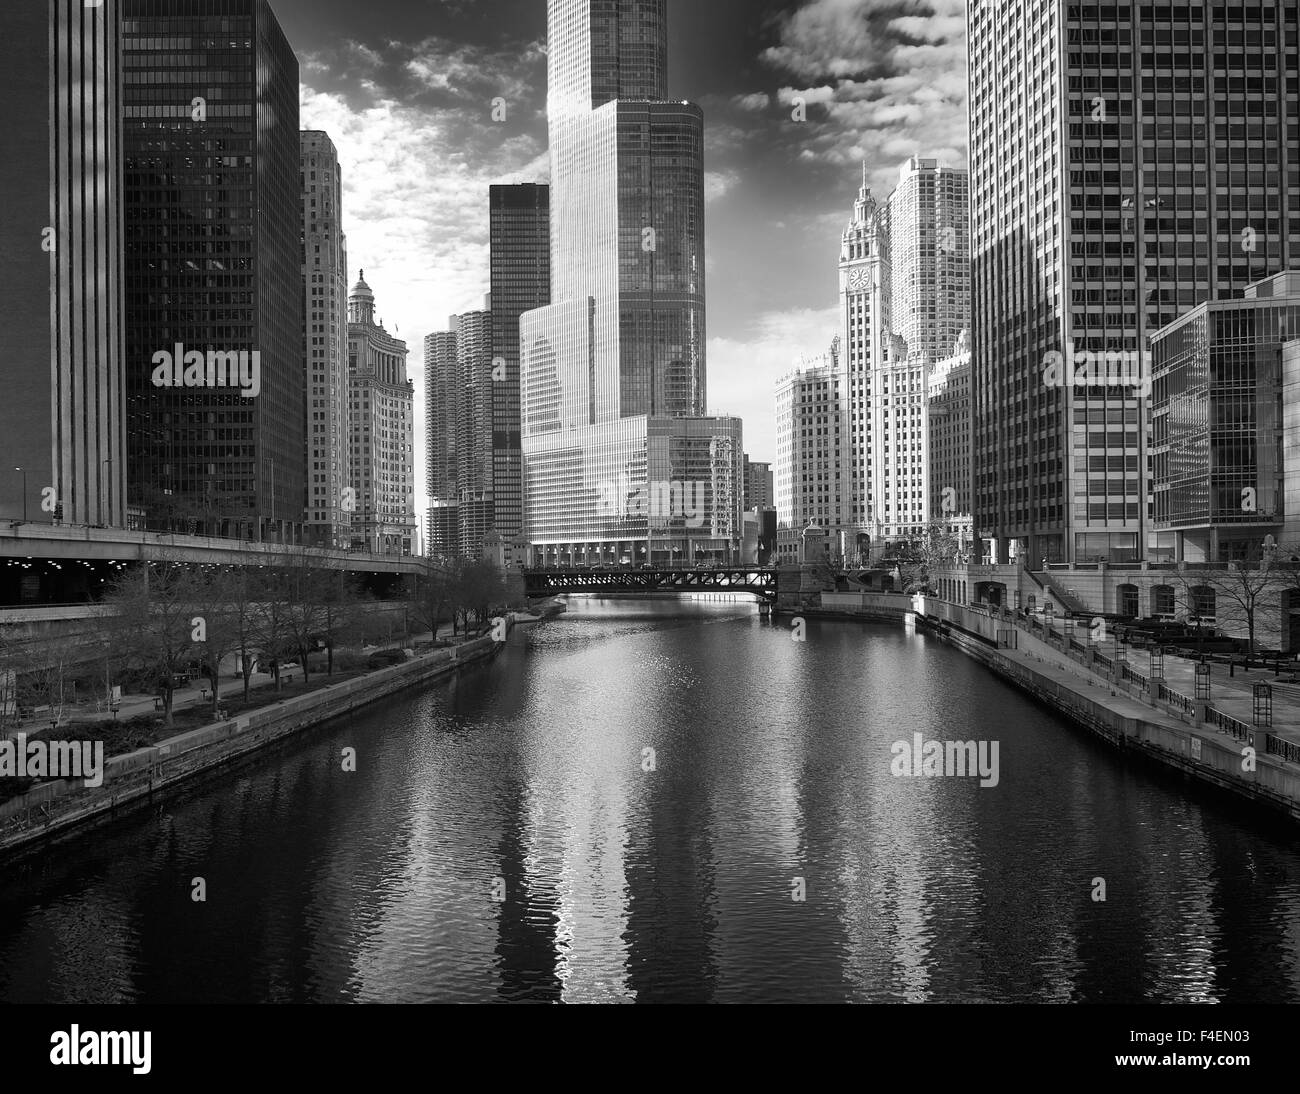 Stati Uniti d'America, Illinois, Chicago. Ponte sul fiume con Trump Tower e Chicago Tribune Building in background. Foto Stock